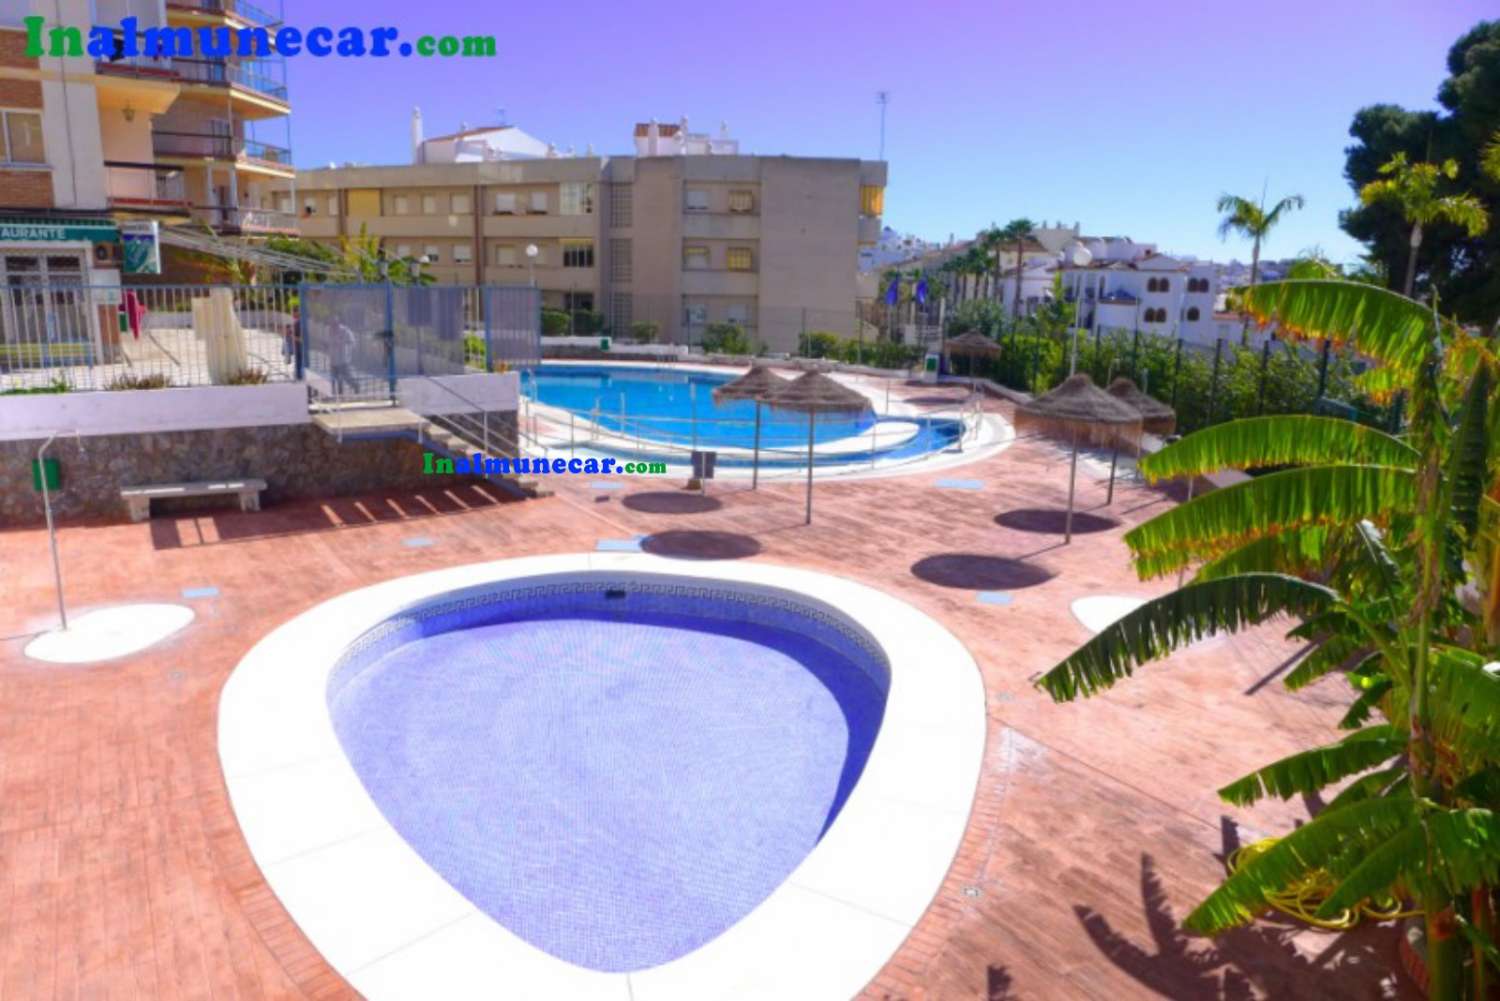 Lejlighed til salg i Almuñecar med pool og fælles parkering